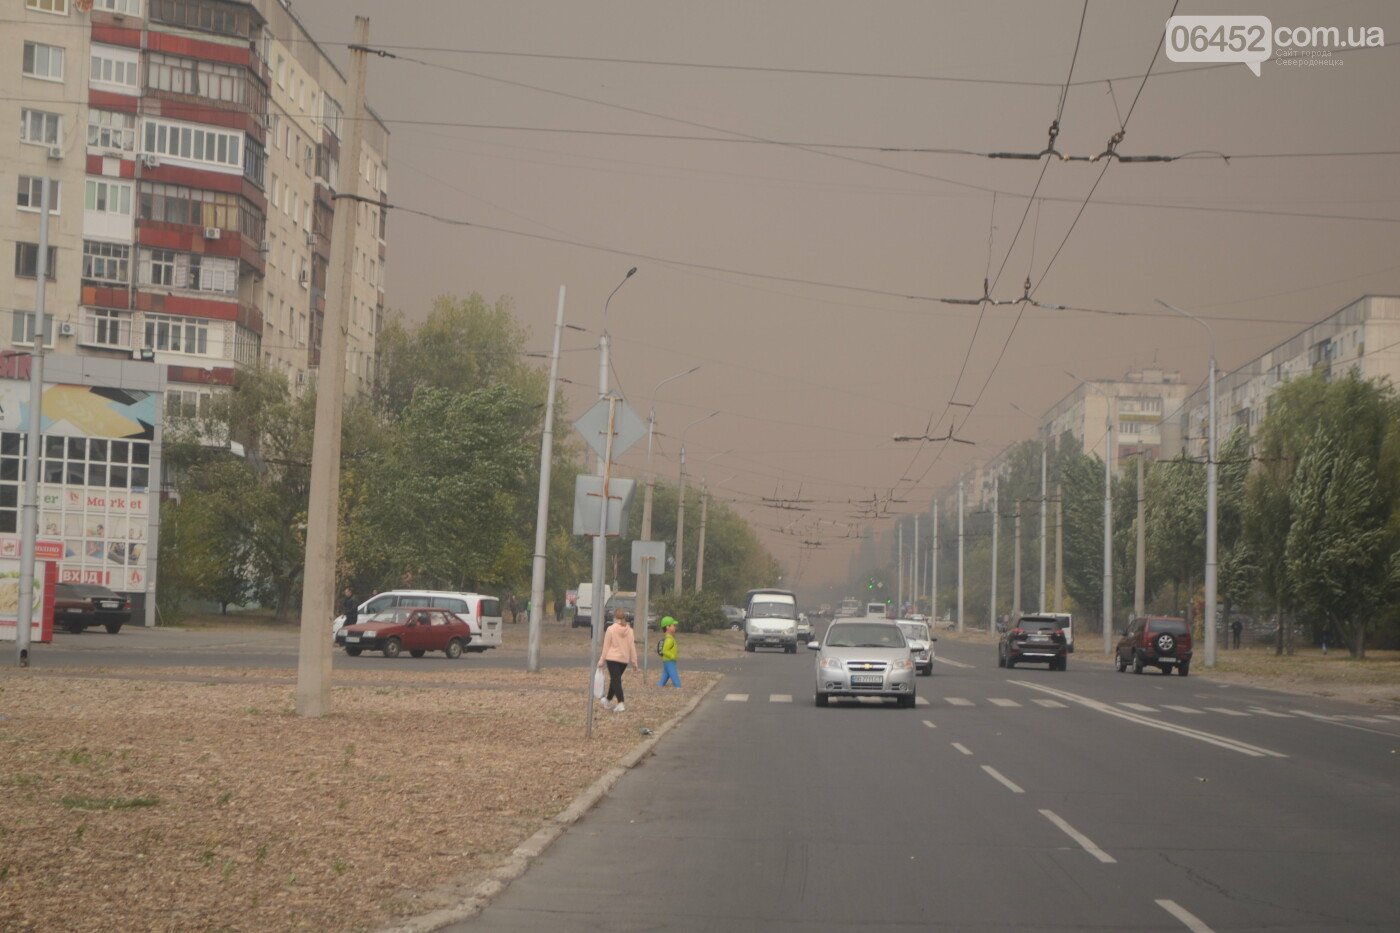 Лес, пламя и люди: 30 сентября – годовщина начала масштабных пожаров на Луганщине (фото, видео) , фото-8